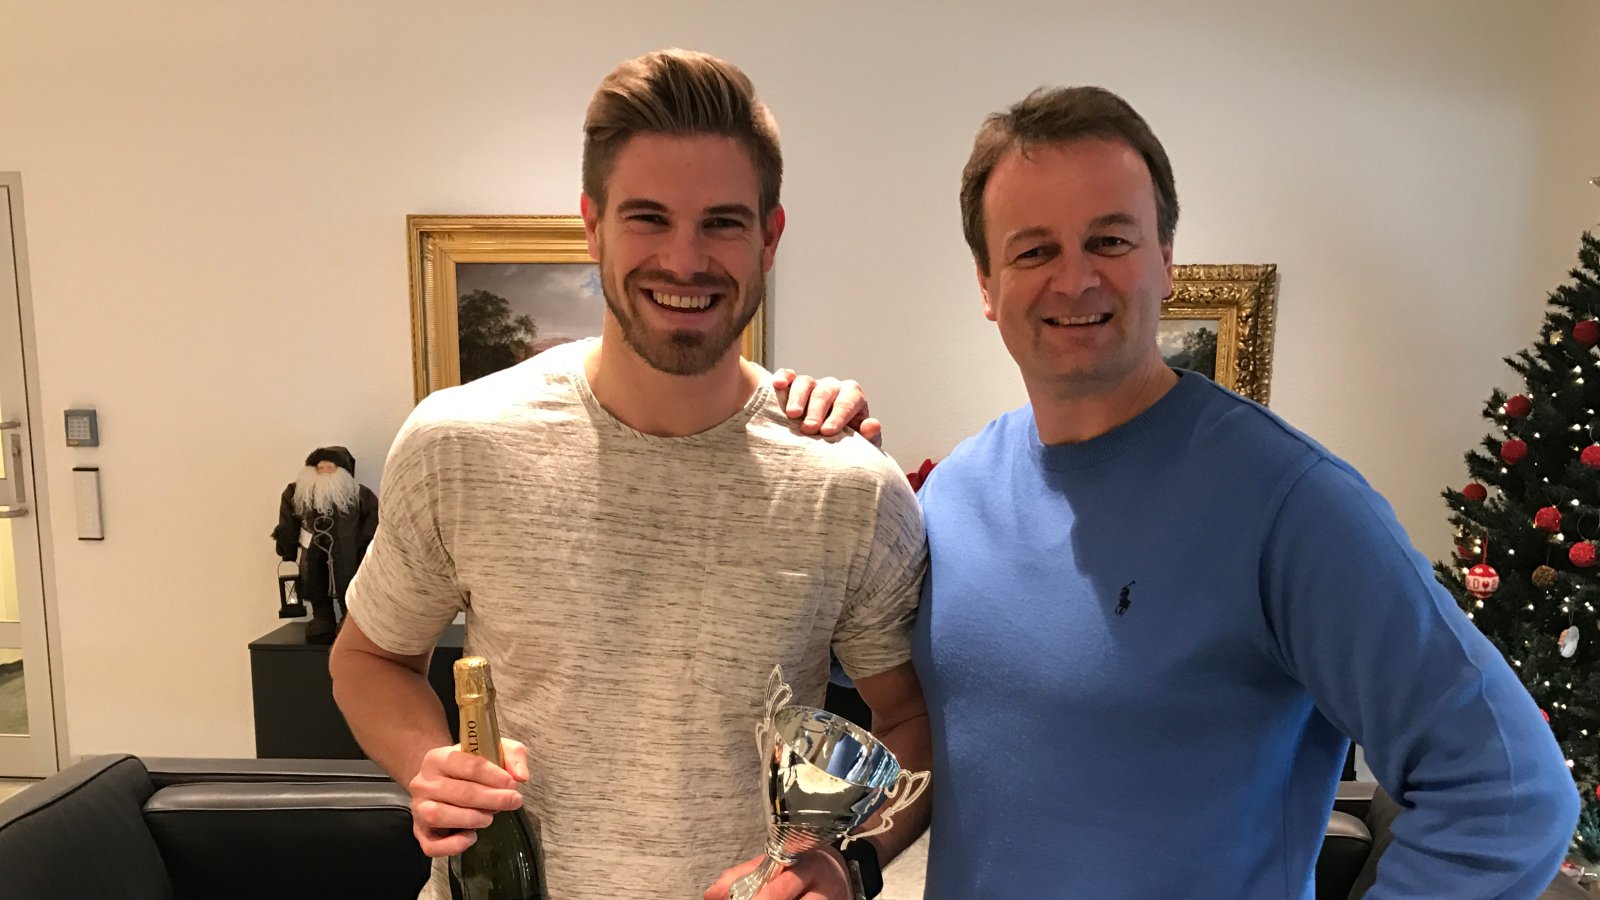 Jostein Aaland fikk overrakt prisen som "Årets spiller 2016" i Arendal Fotball av sportslig leder Geir Fone.